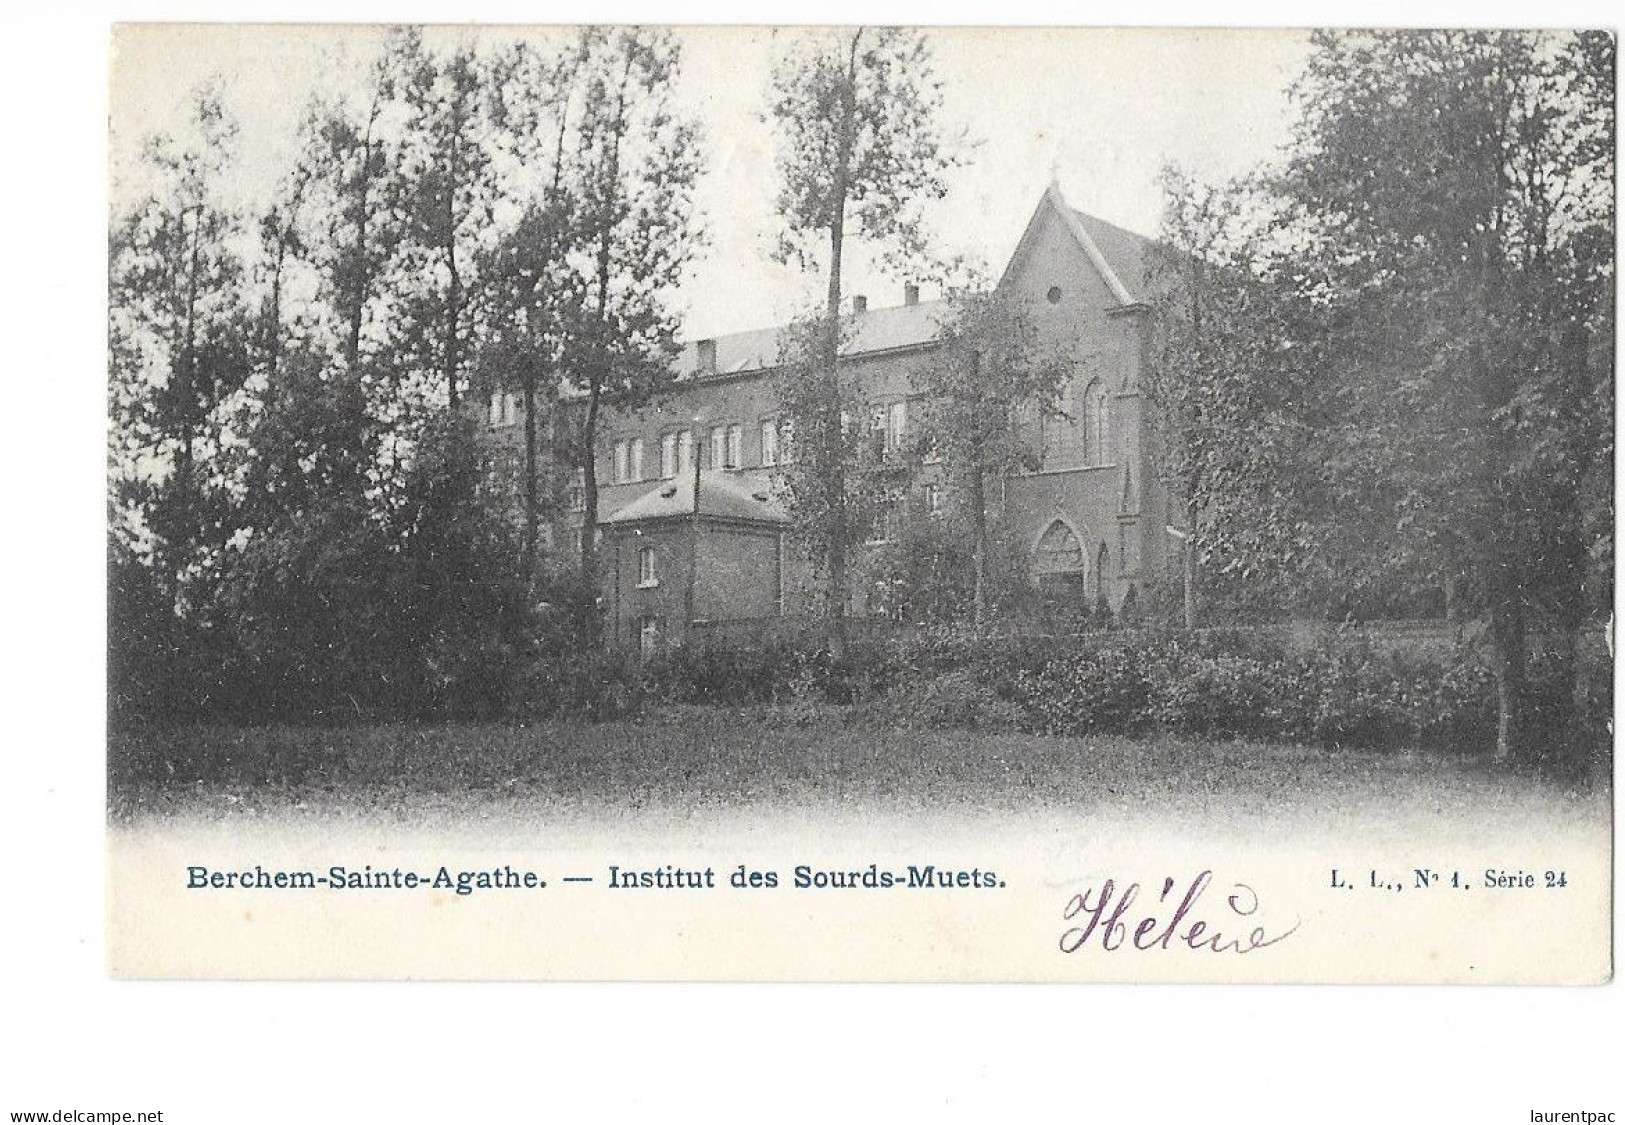 Berchem-Sainte-Agathe - Institut Des Sourds-Muets - édit. L.L. Série 24 N°1 + Verso - Berchem-Ste-Agathe - St-Agatha-Berchem